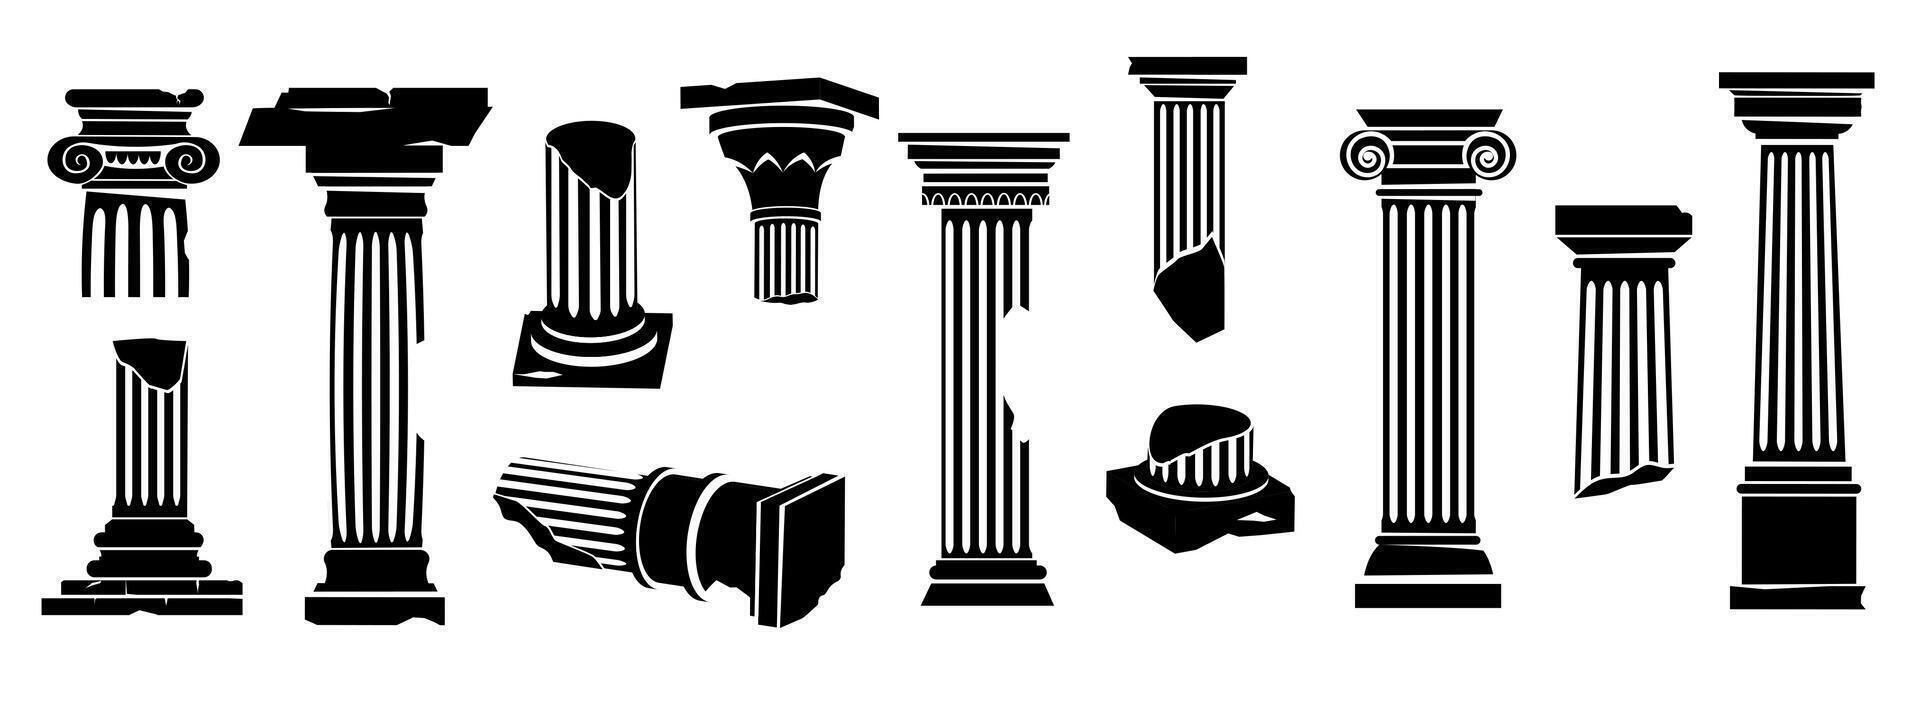 ancien grec Colonnes silhouette. noir classique romain architectural bâtiment éléments, monochrome antique piliers et socles plat style. vecteur collection